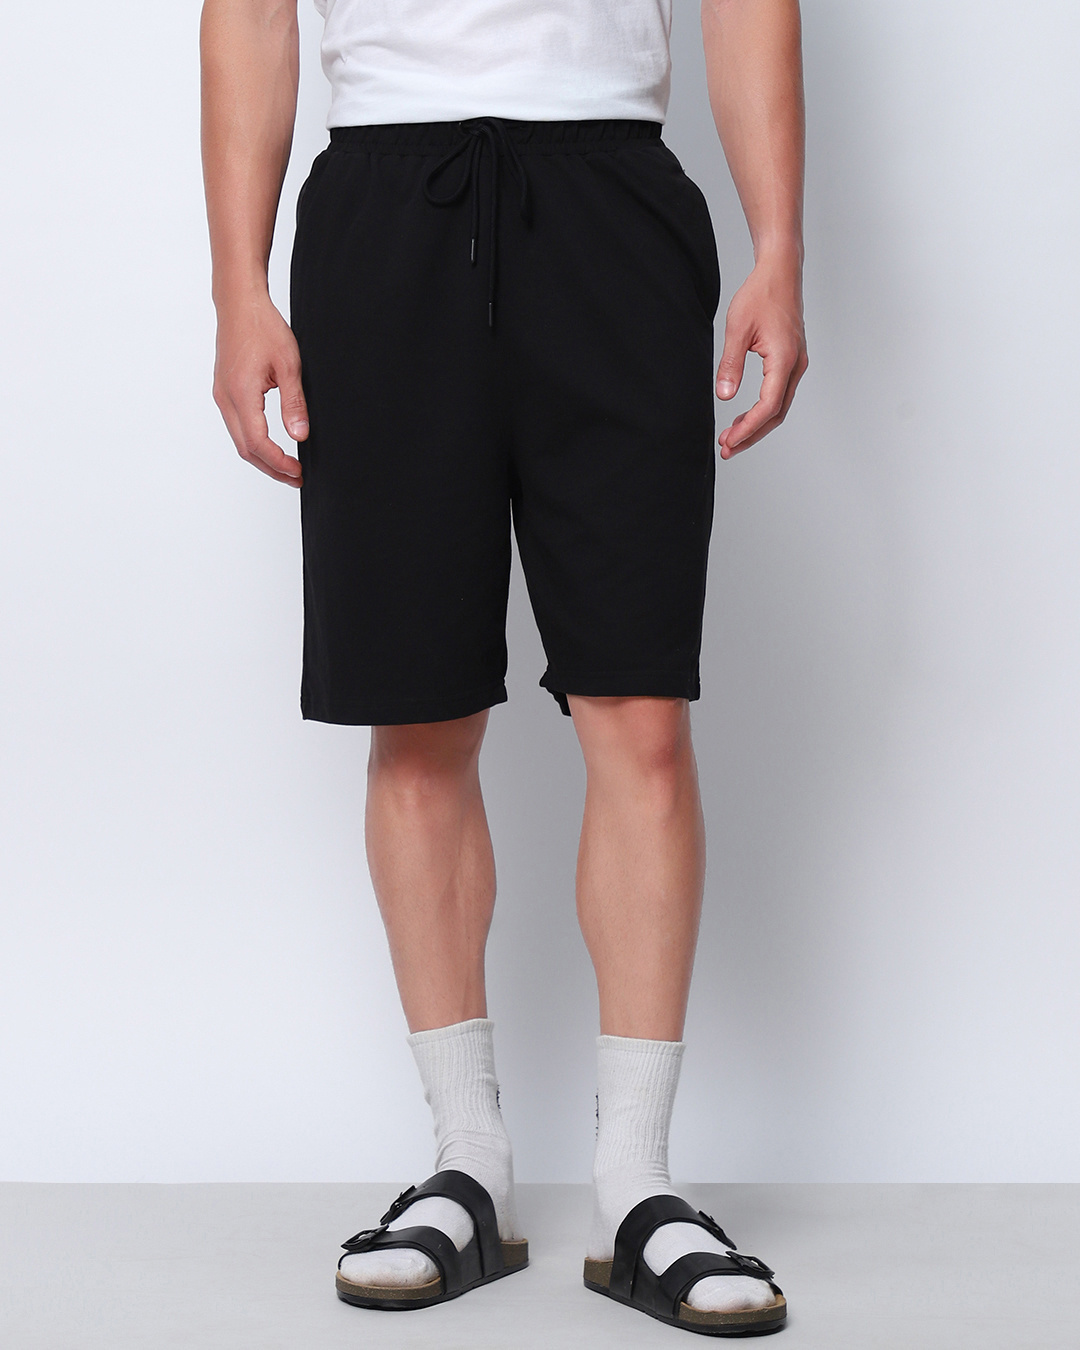 Buy Men's Black Oversized Shorts Online at Bewakoof